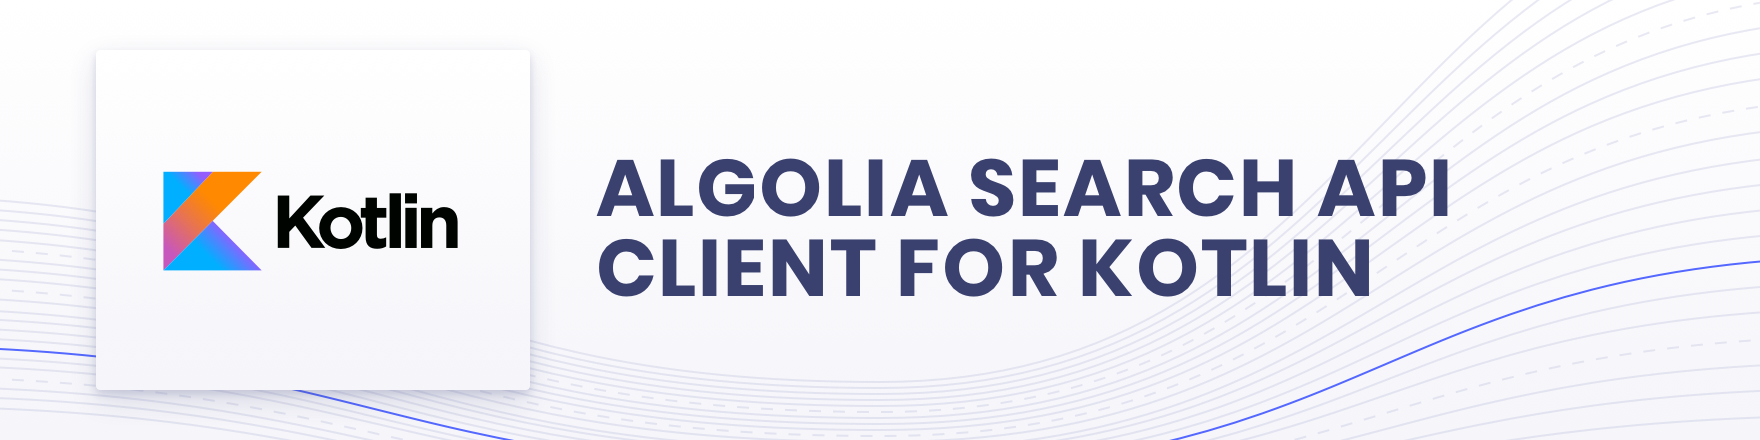 Algolia for Kotlin